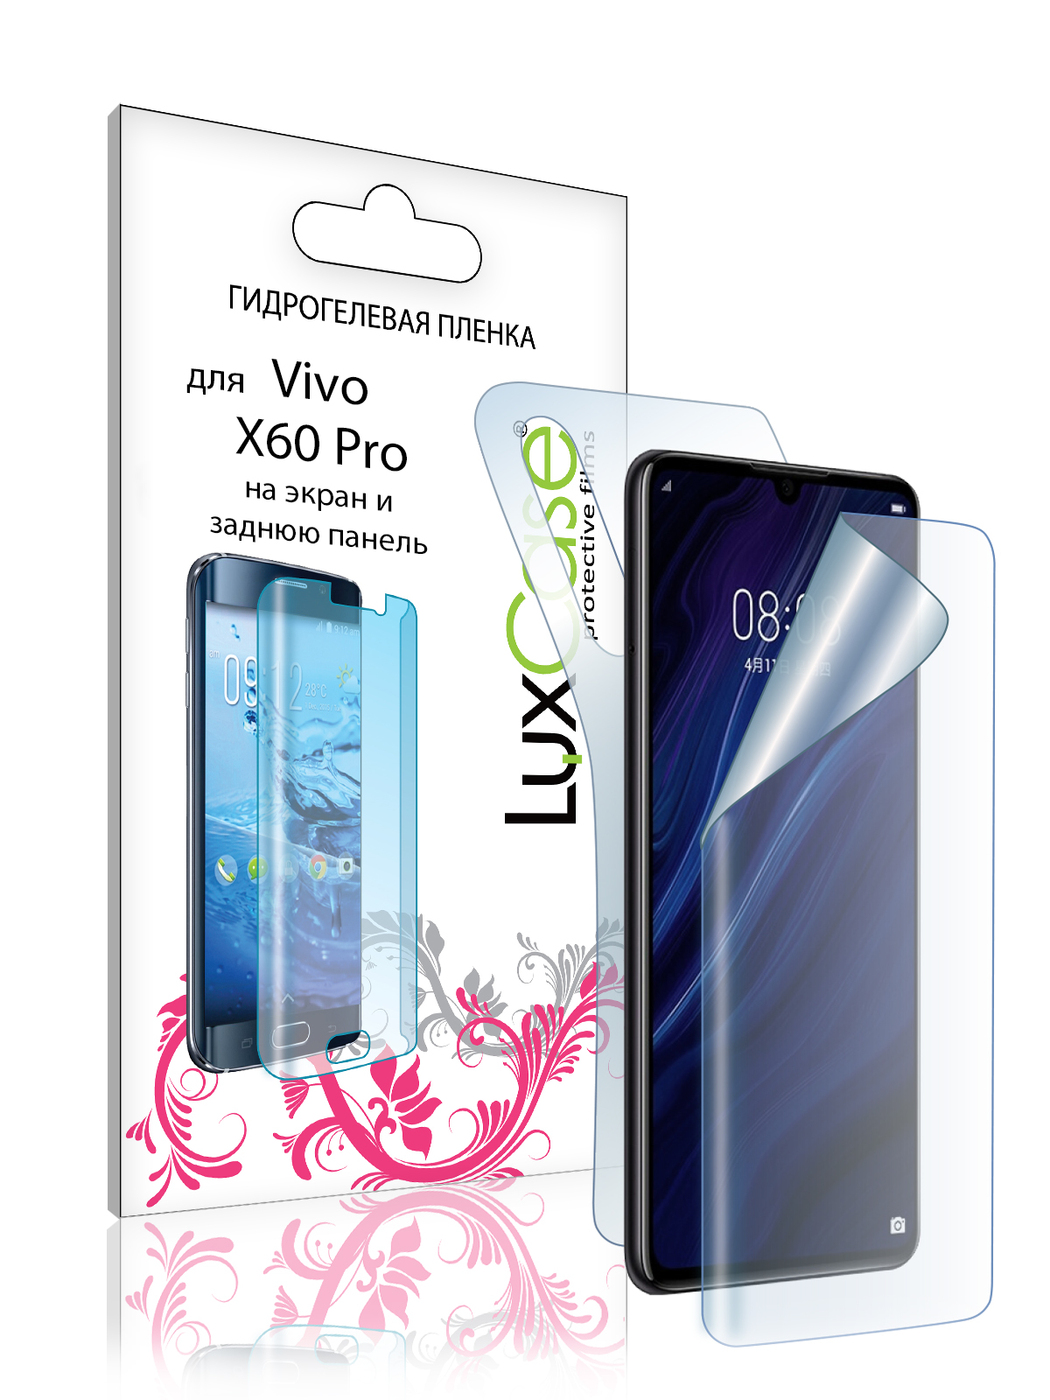 Пленка гидрогелевая LuxCase для Vivo X60 Pro Front and Back 0.14mm Transparent 86003 гидрогелевая пленка с вырезом под камер задняя крышка и на дисплей для vivo x60 pro